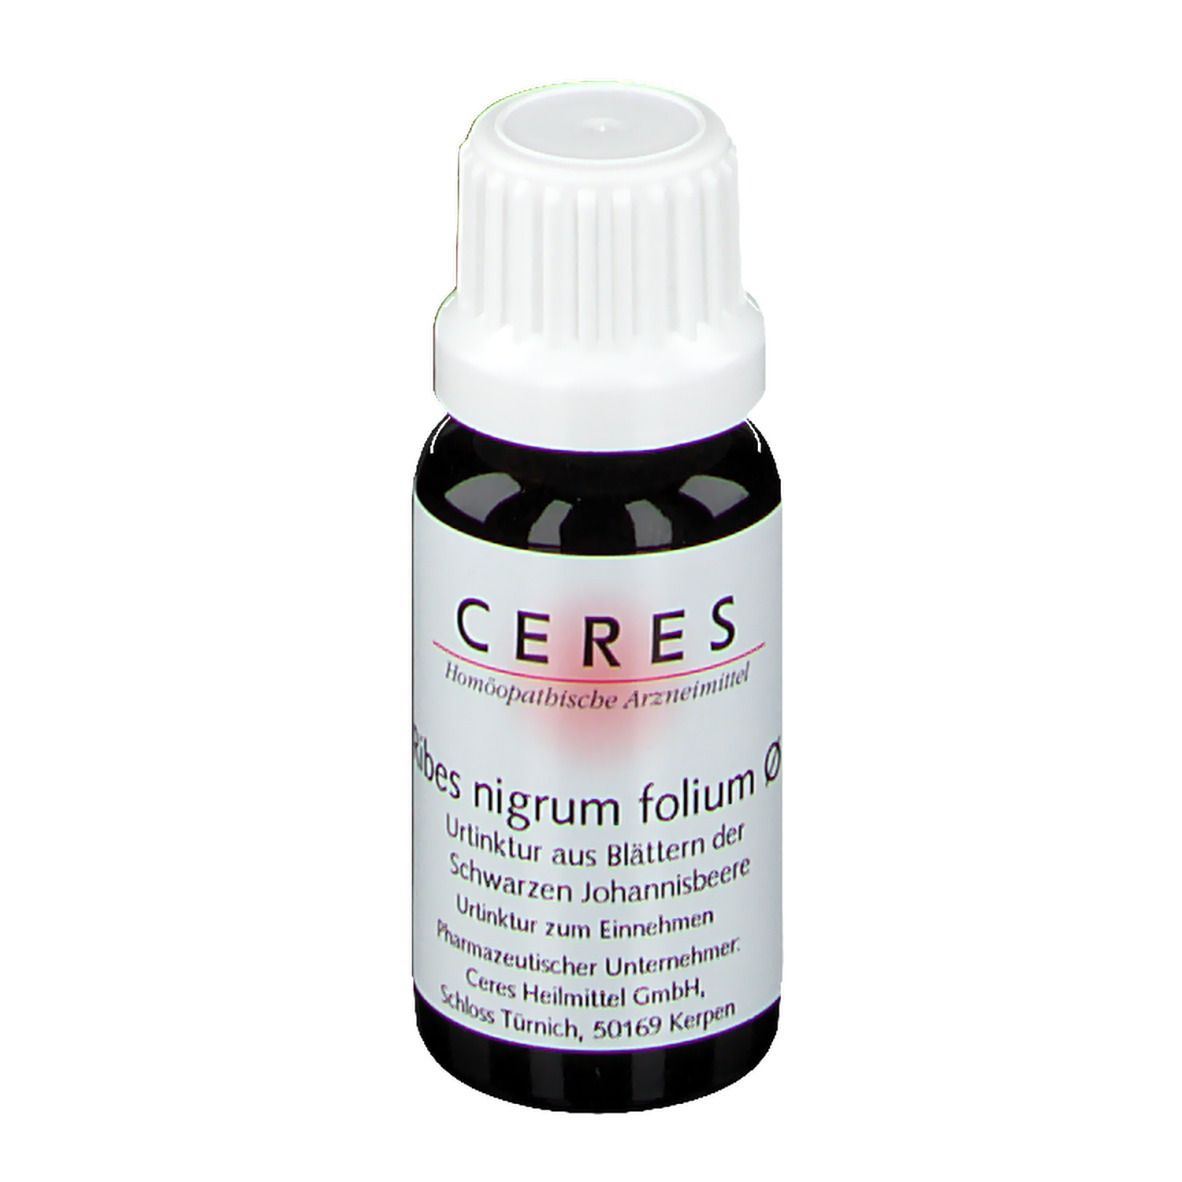 CERES Ribes Nigrum Folium Urtinktur